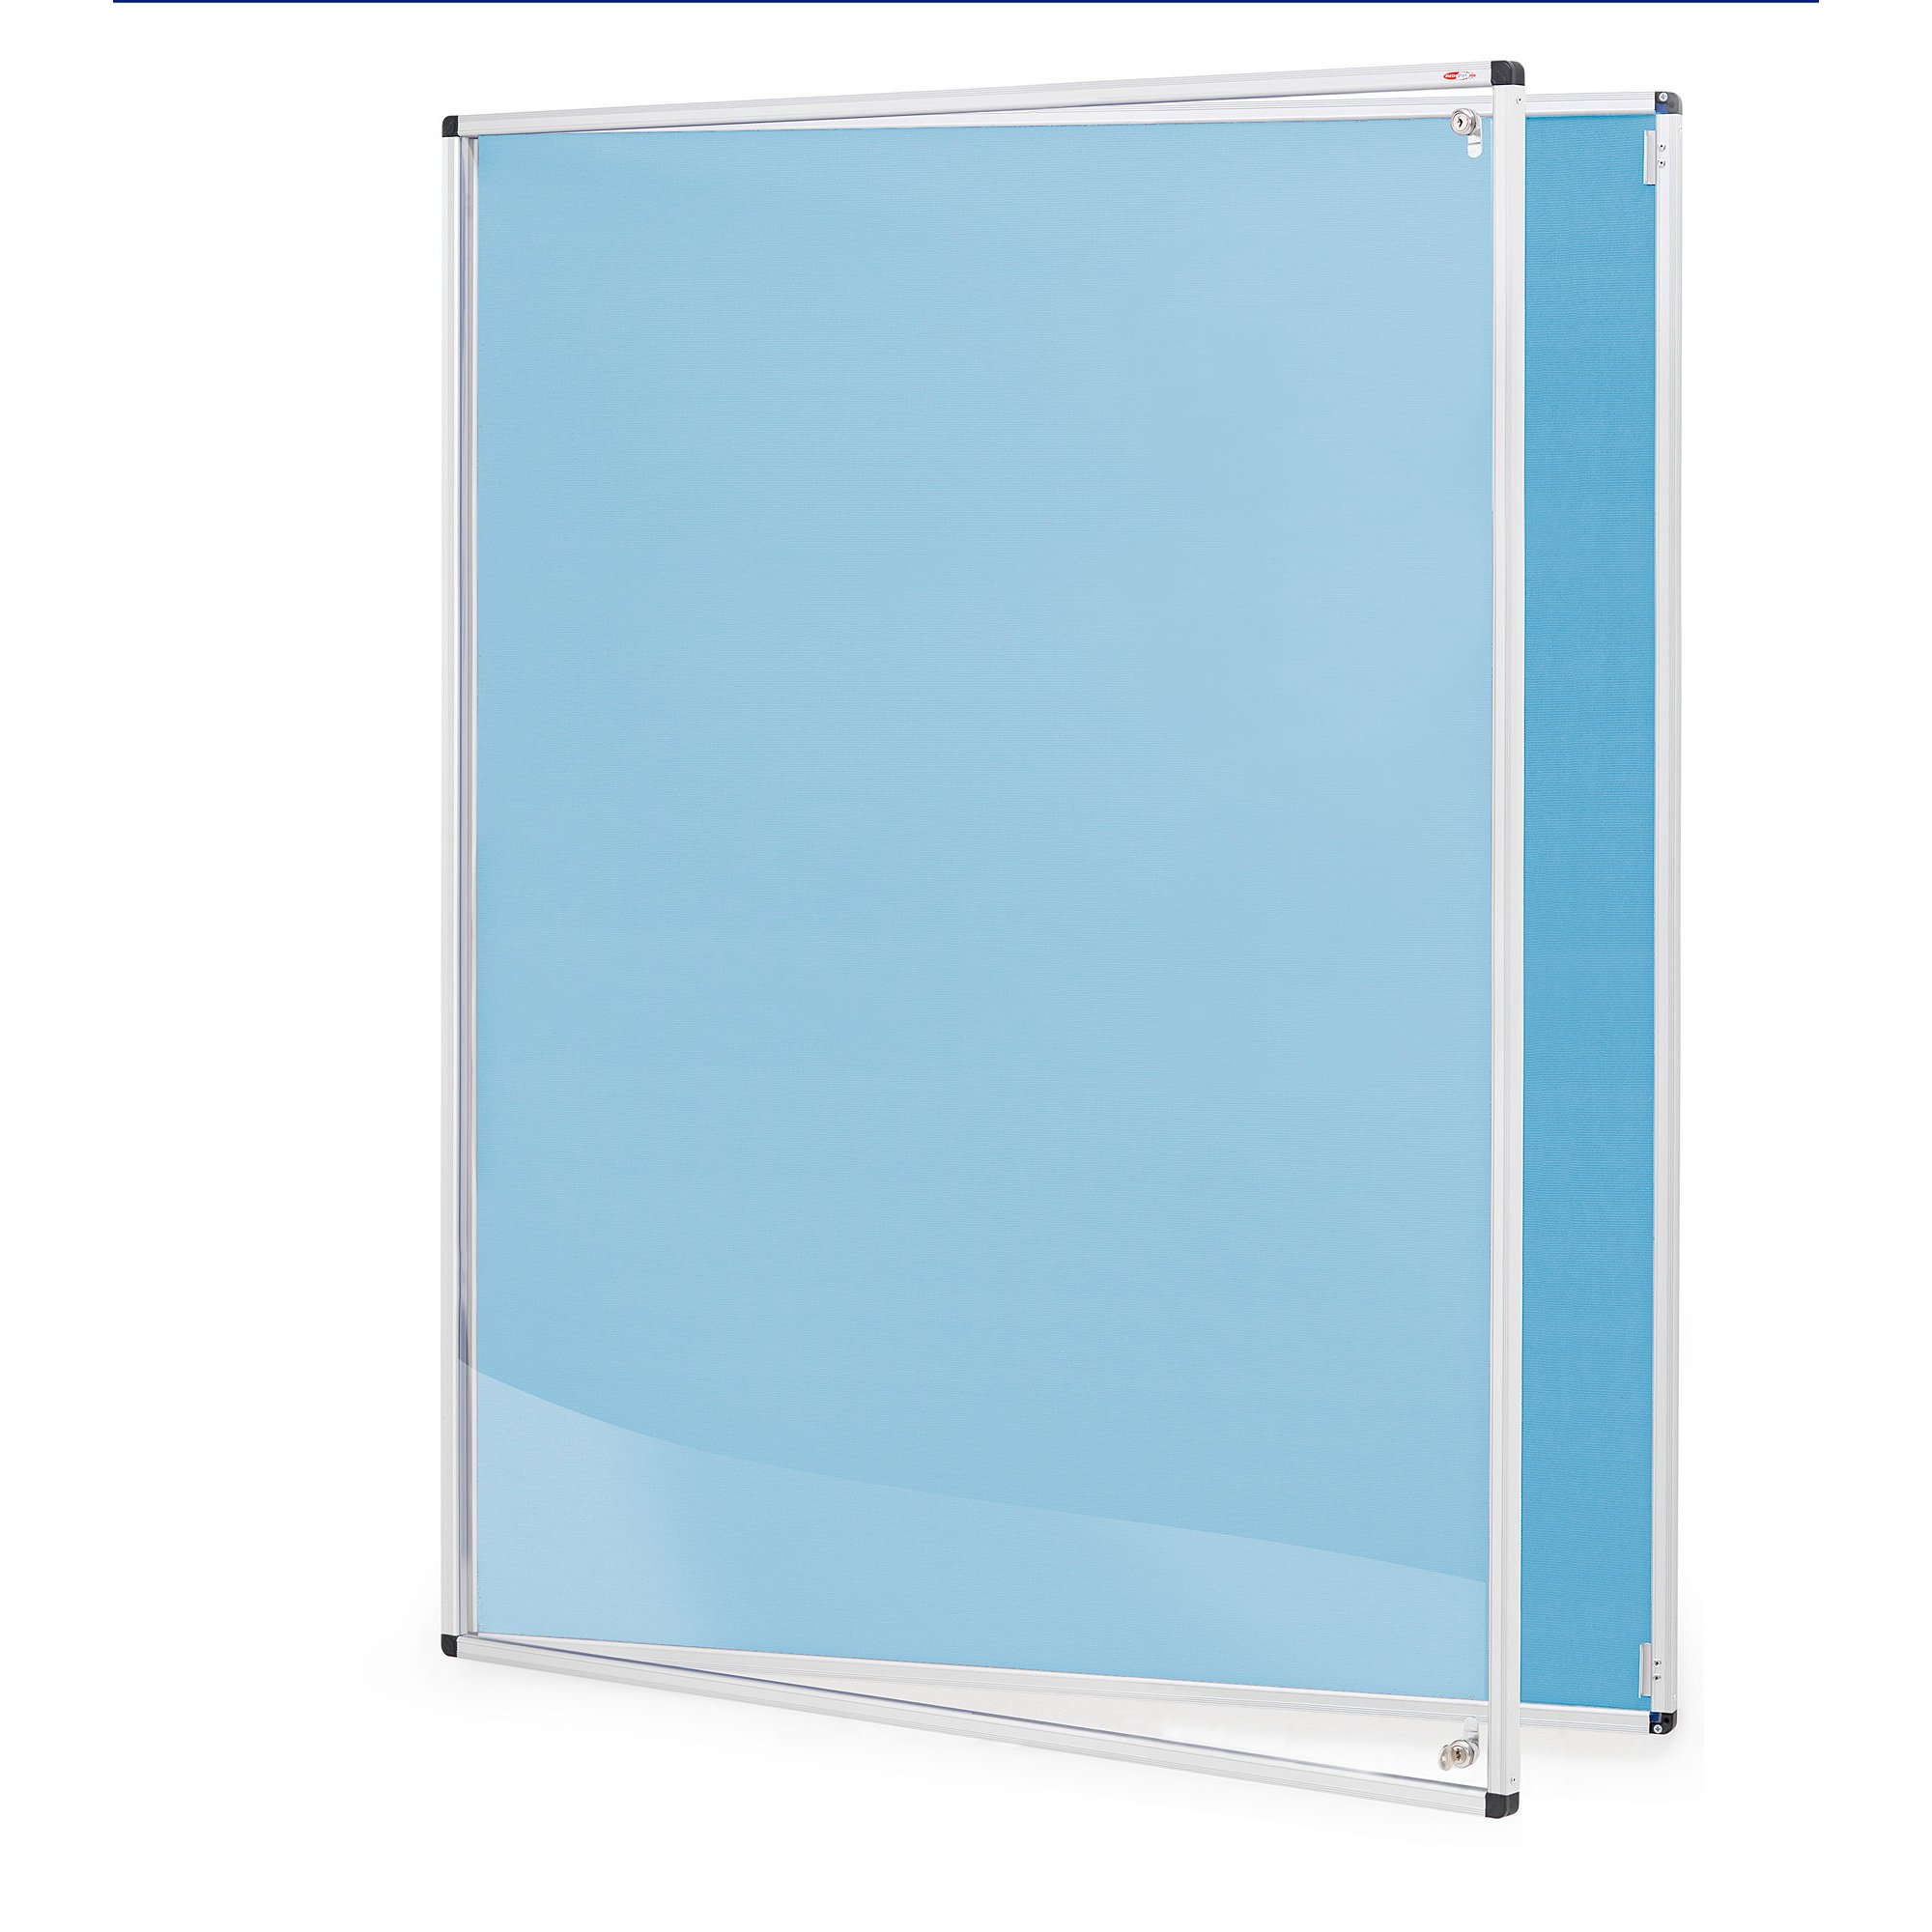 Tamperproof noticeboard, 900x1200 mm, light blue